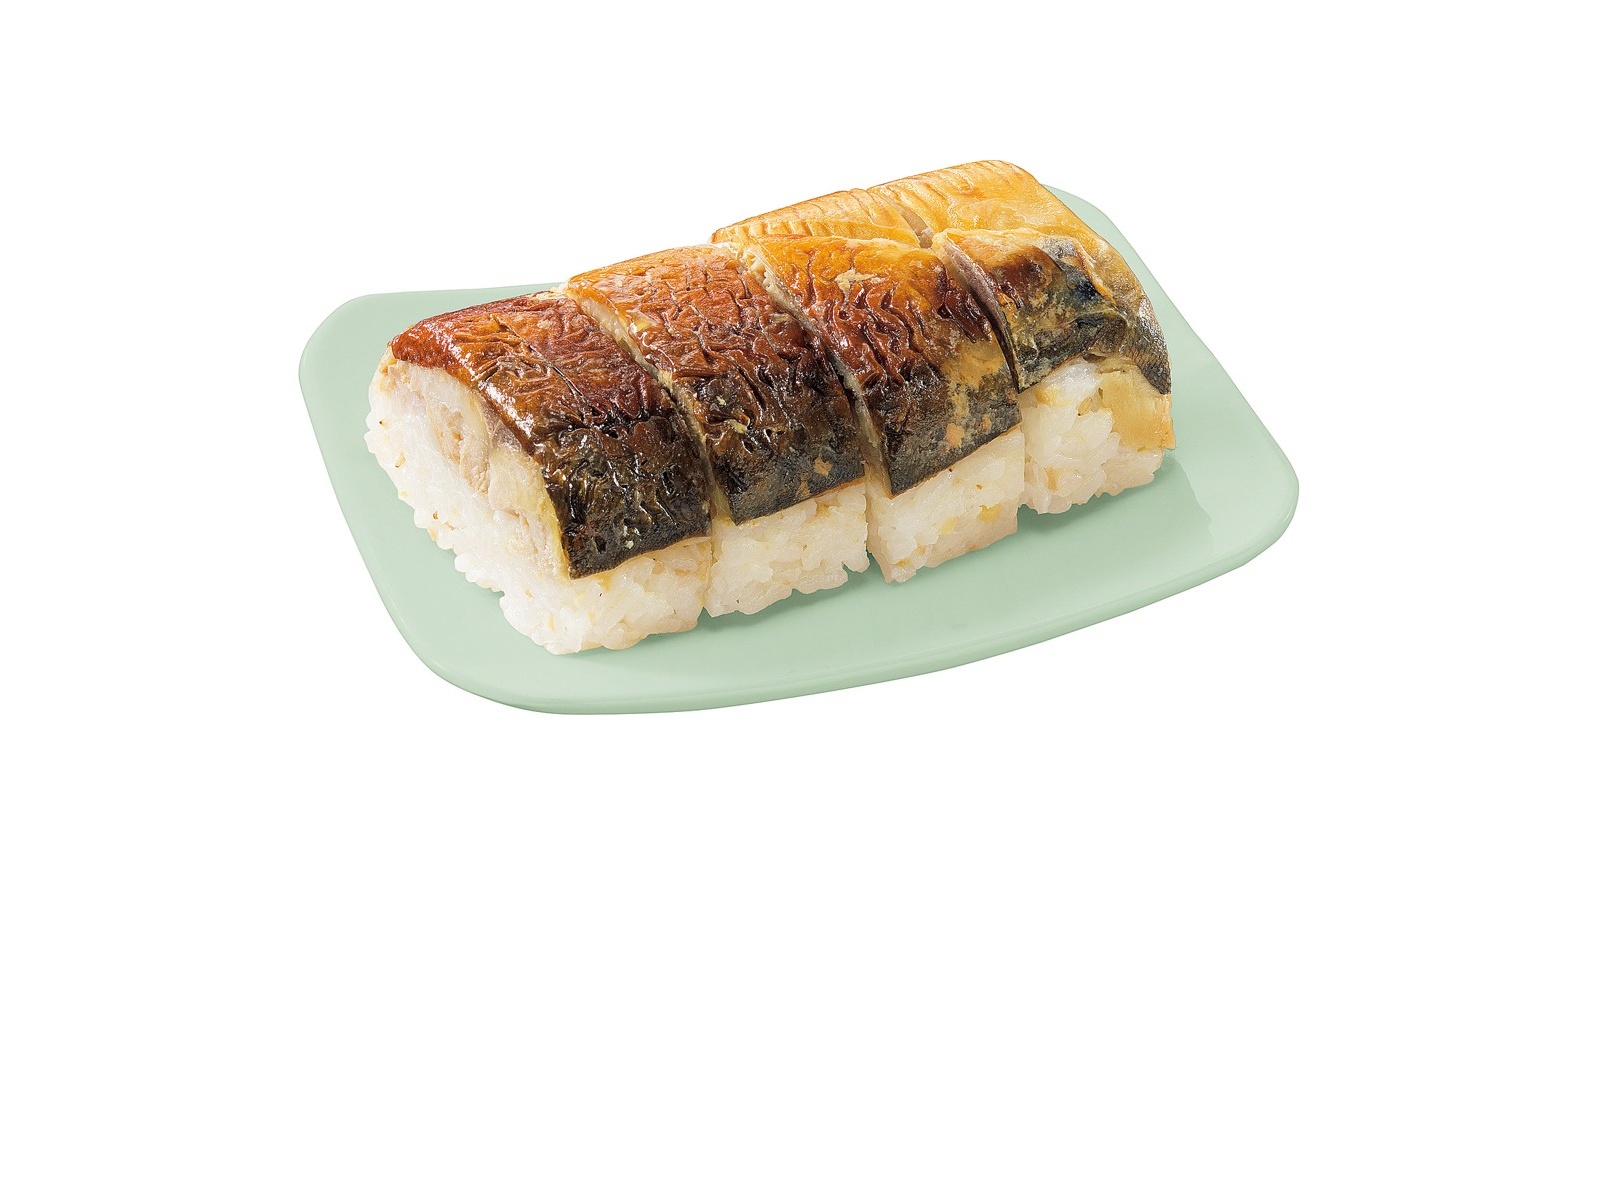 CO・OP 焼き鯖の押し寿司 4切入（150g）| コープこうべネット